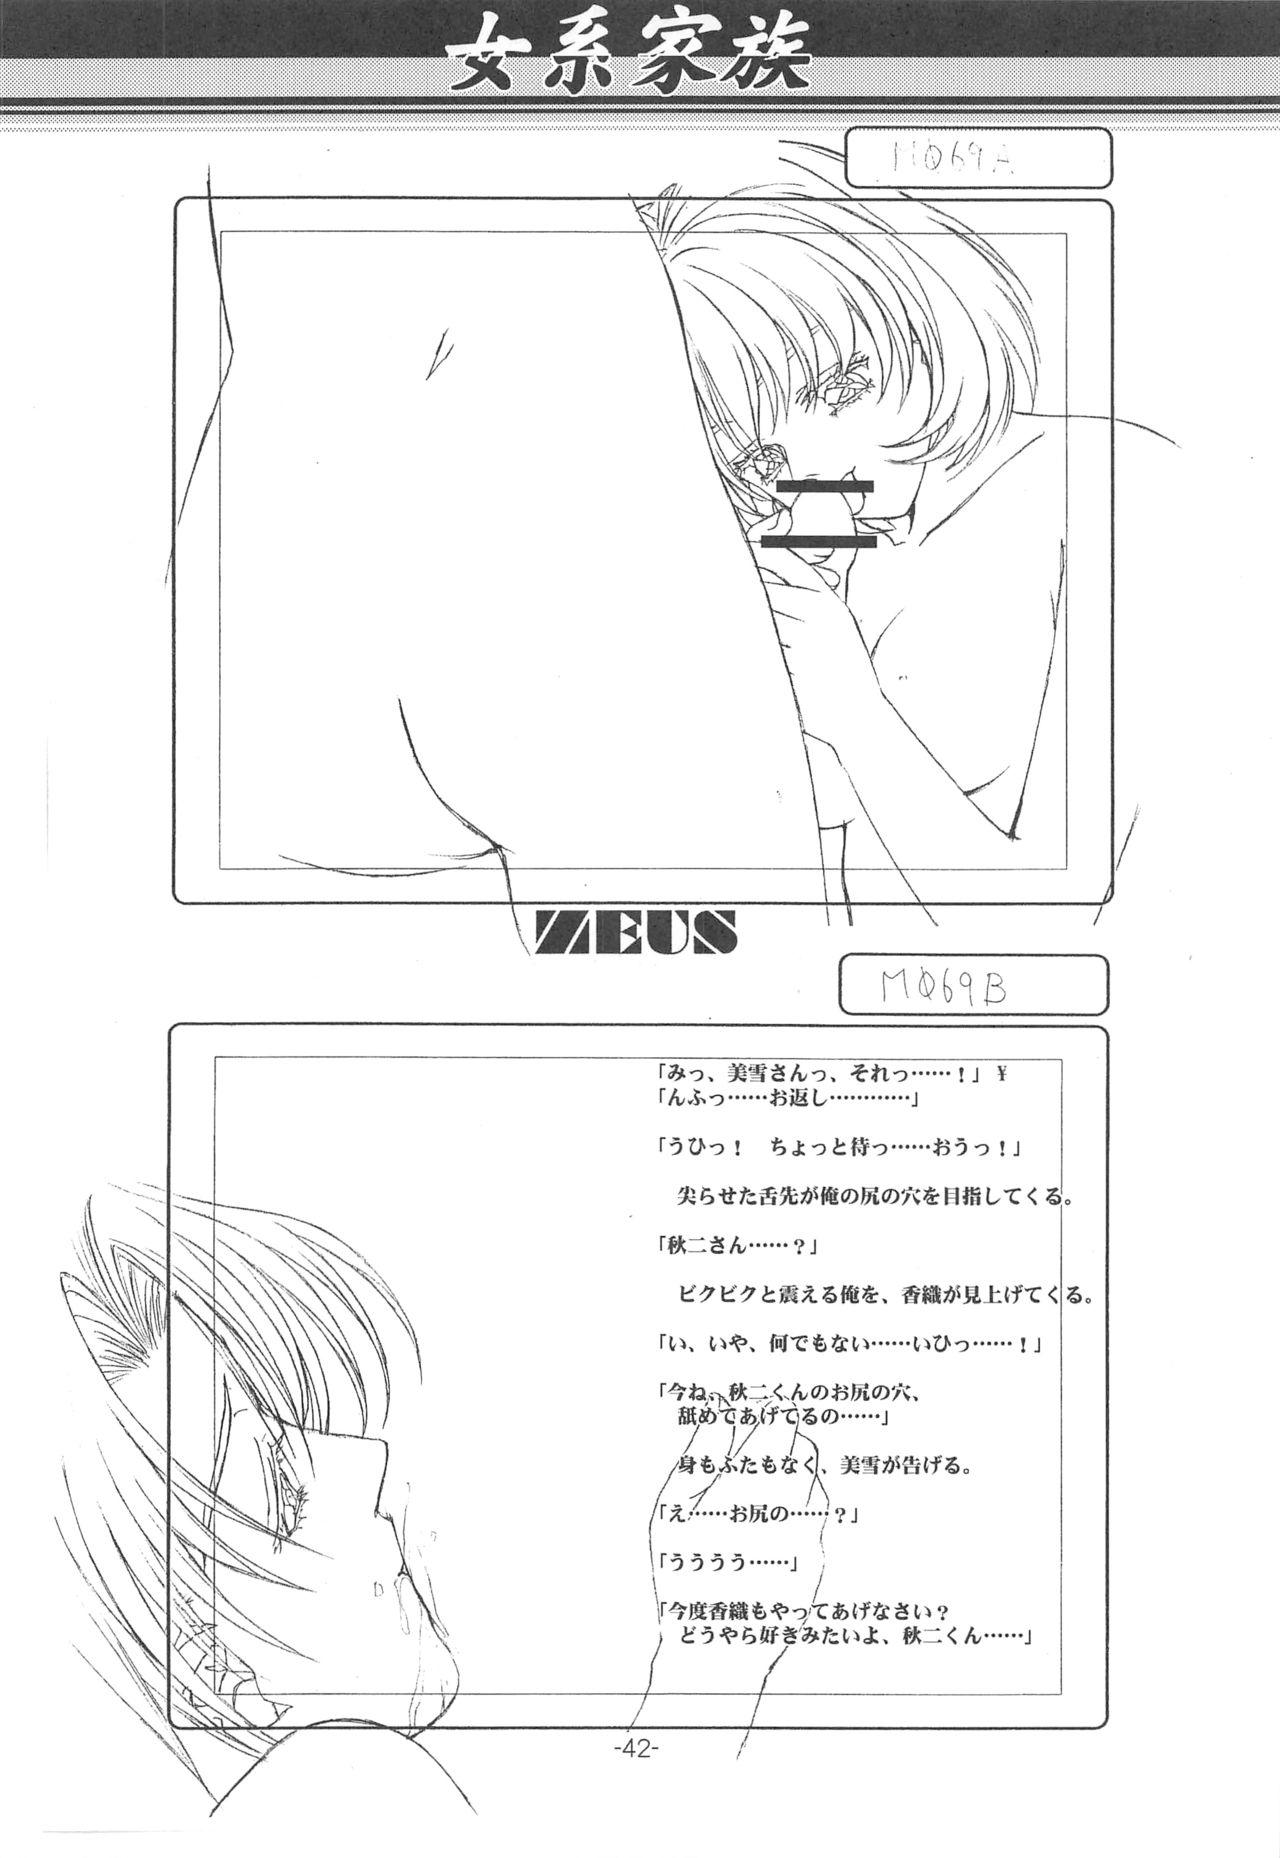 Otonano Do-wa Vol. 14 & Jokei Kazoku Senga shuu 40